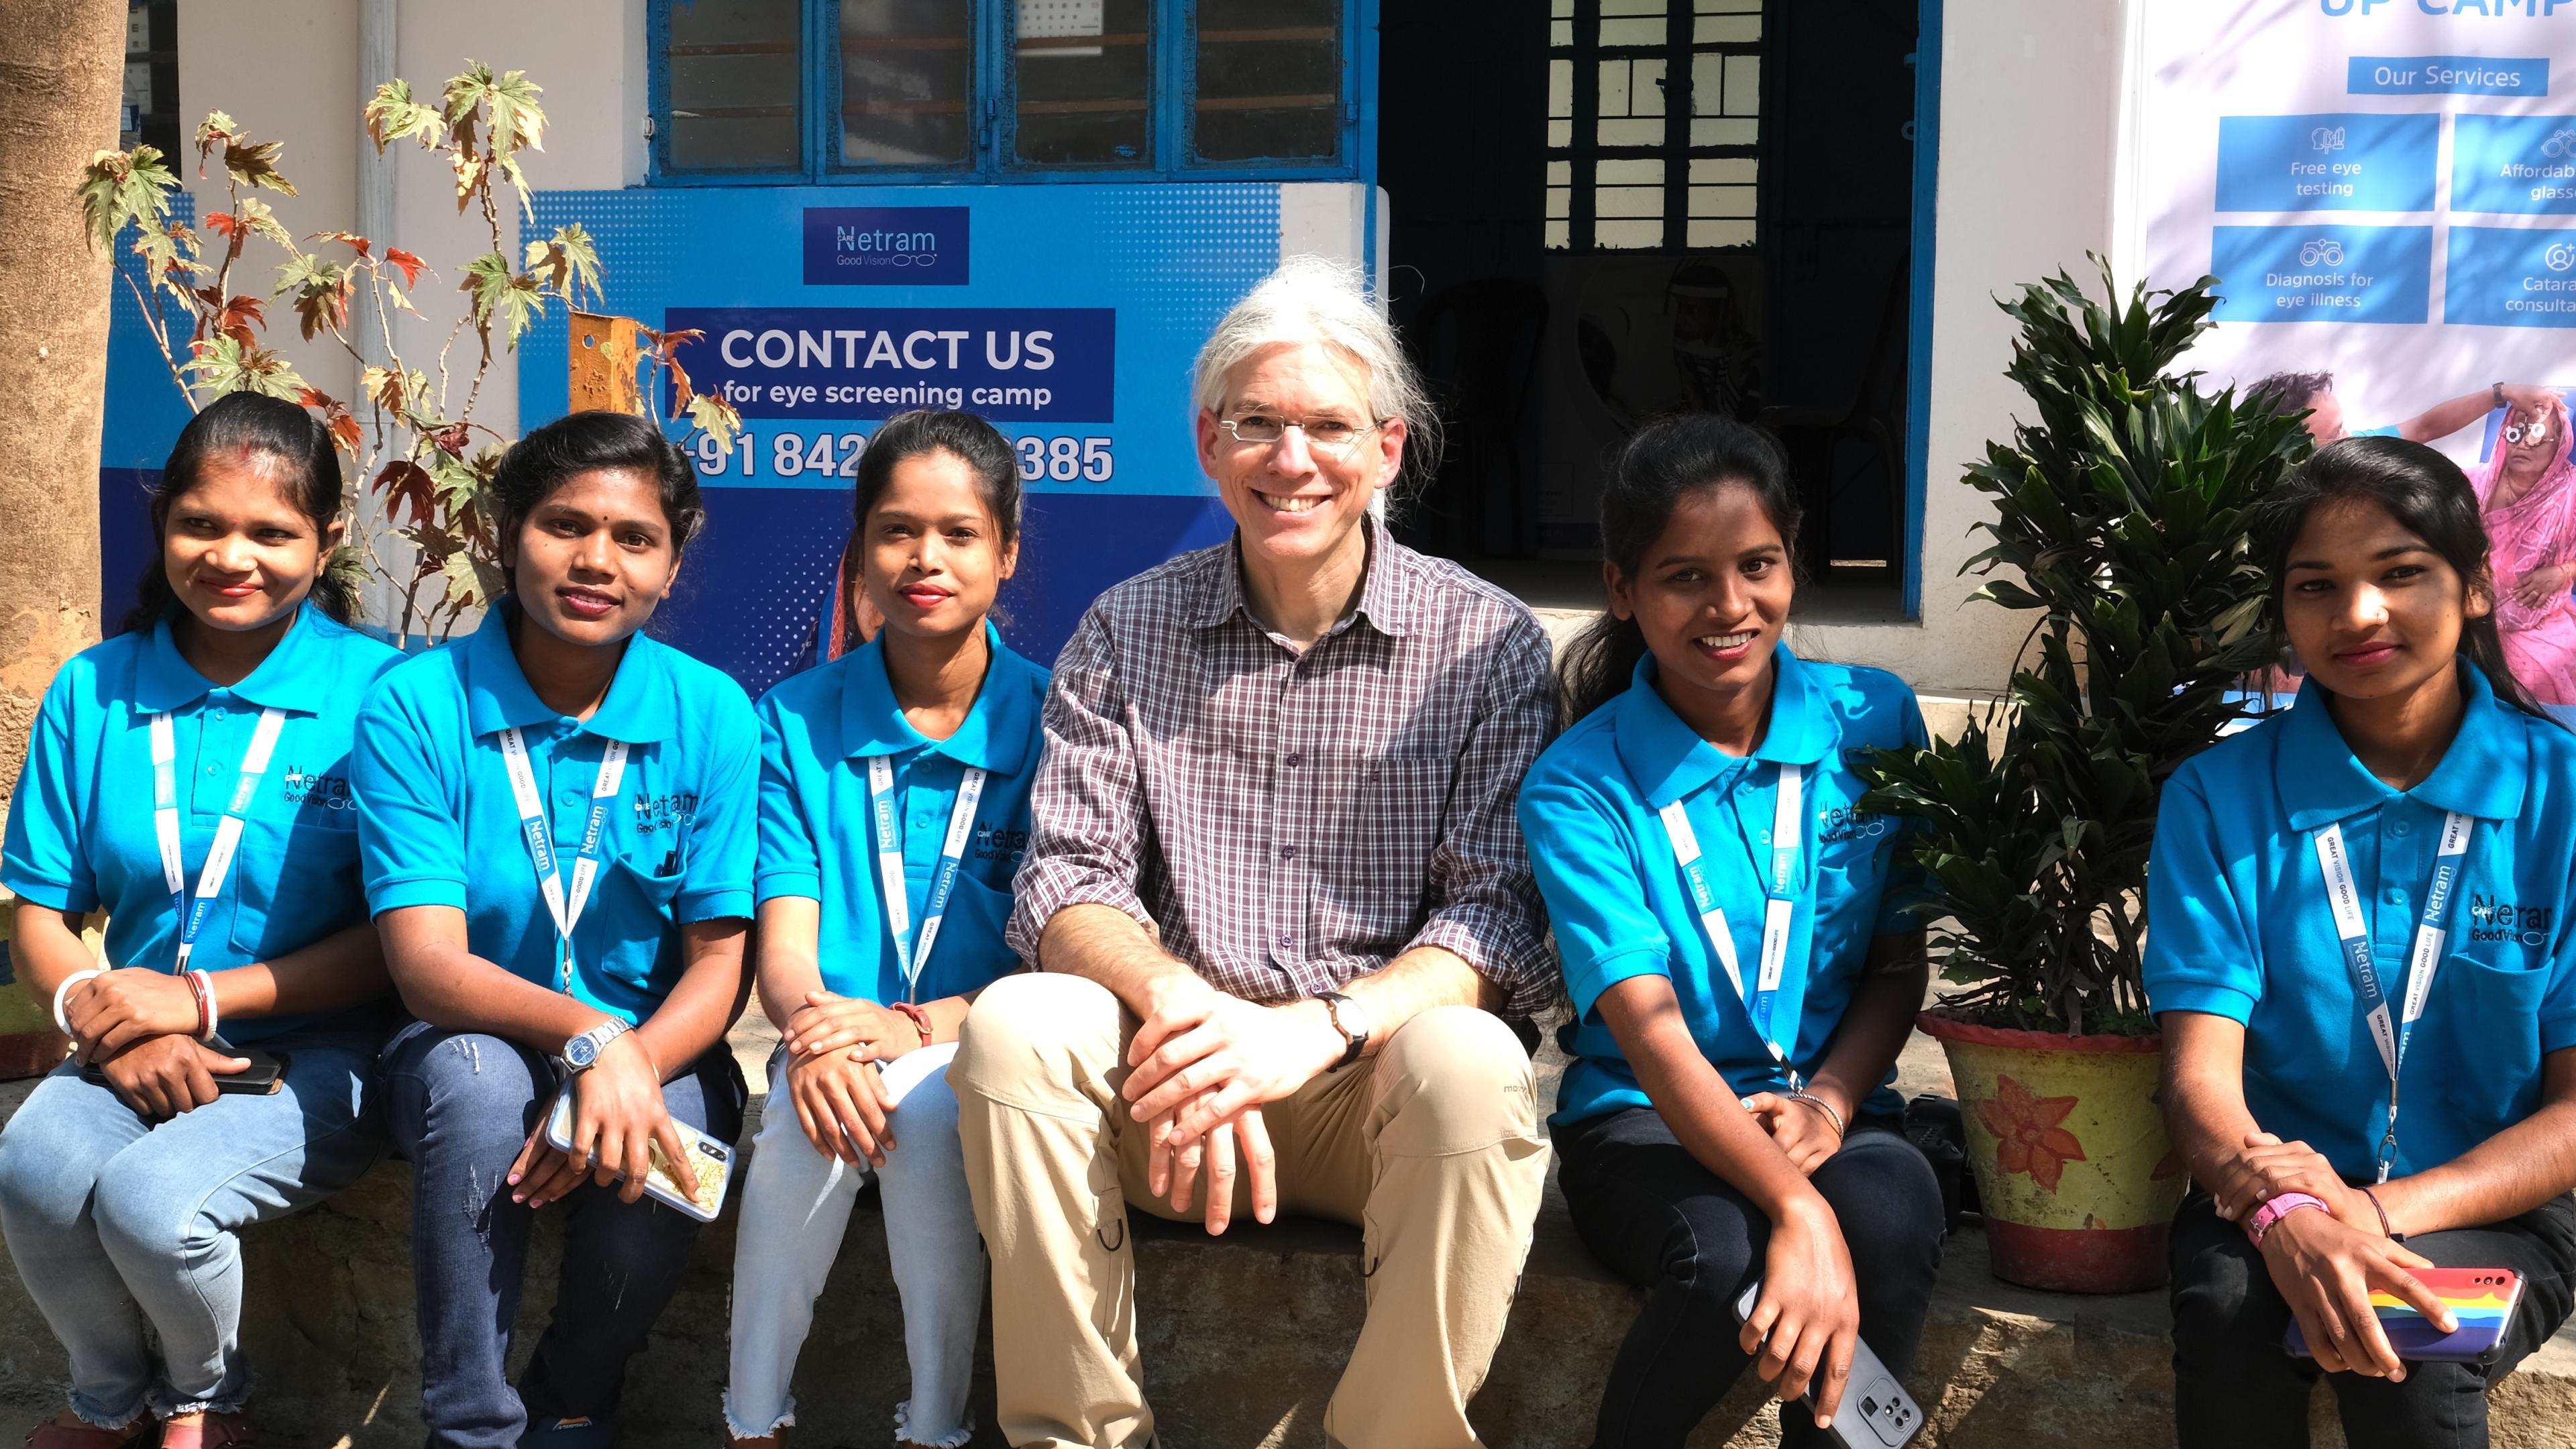 Martin Aufmuth umringt von jungen Mitarbeiterinnen von Care Netram in Indien